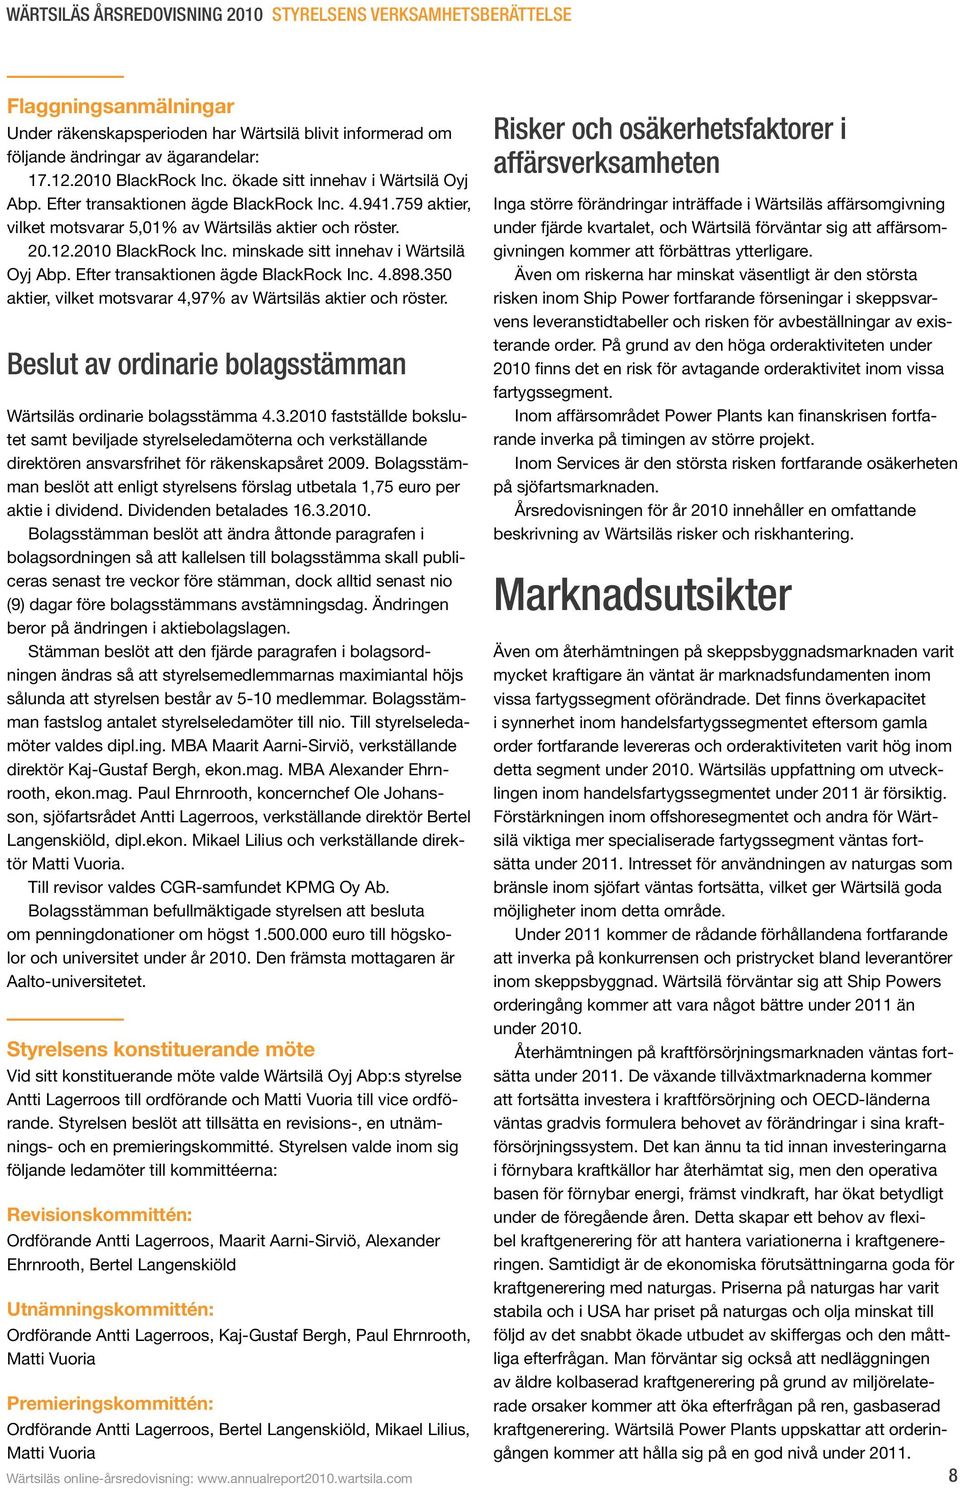 minskade sitt innehav i Wärtsilä Oyj Abp. Efter transaktionen ägde BlackRock Inc. 4.898.35 aktier, vilket motsvarar 4,97% av Wärtsiläs aktier och röster.